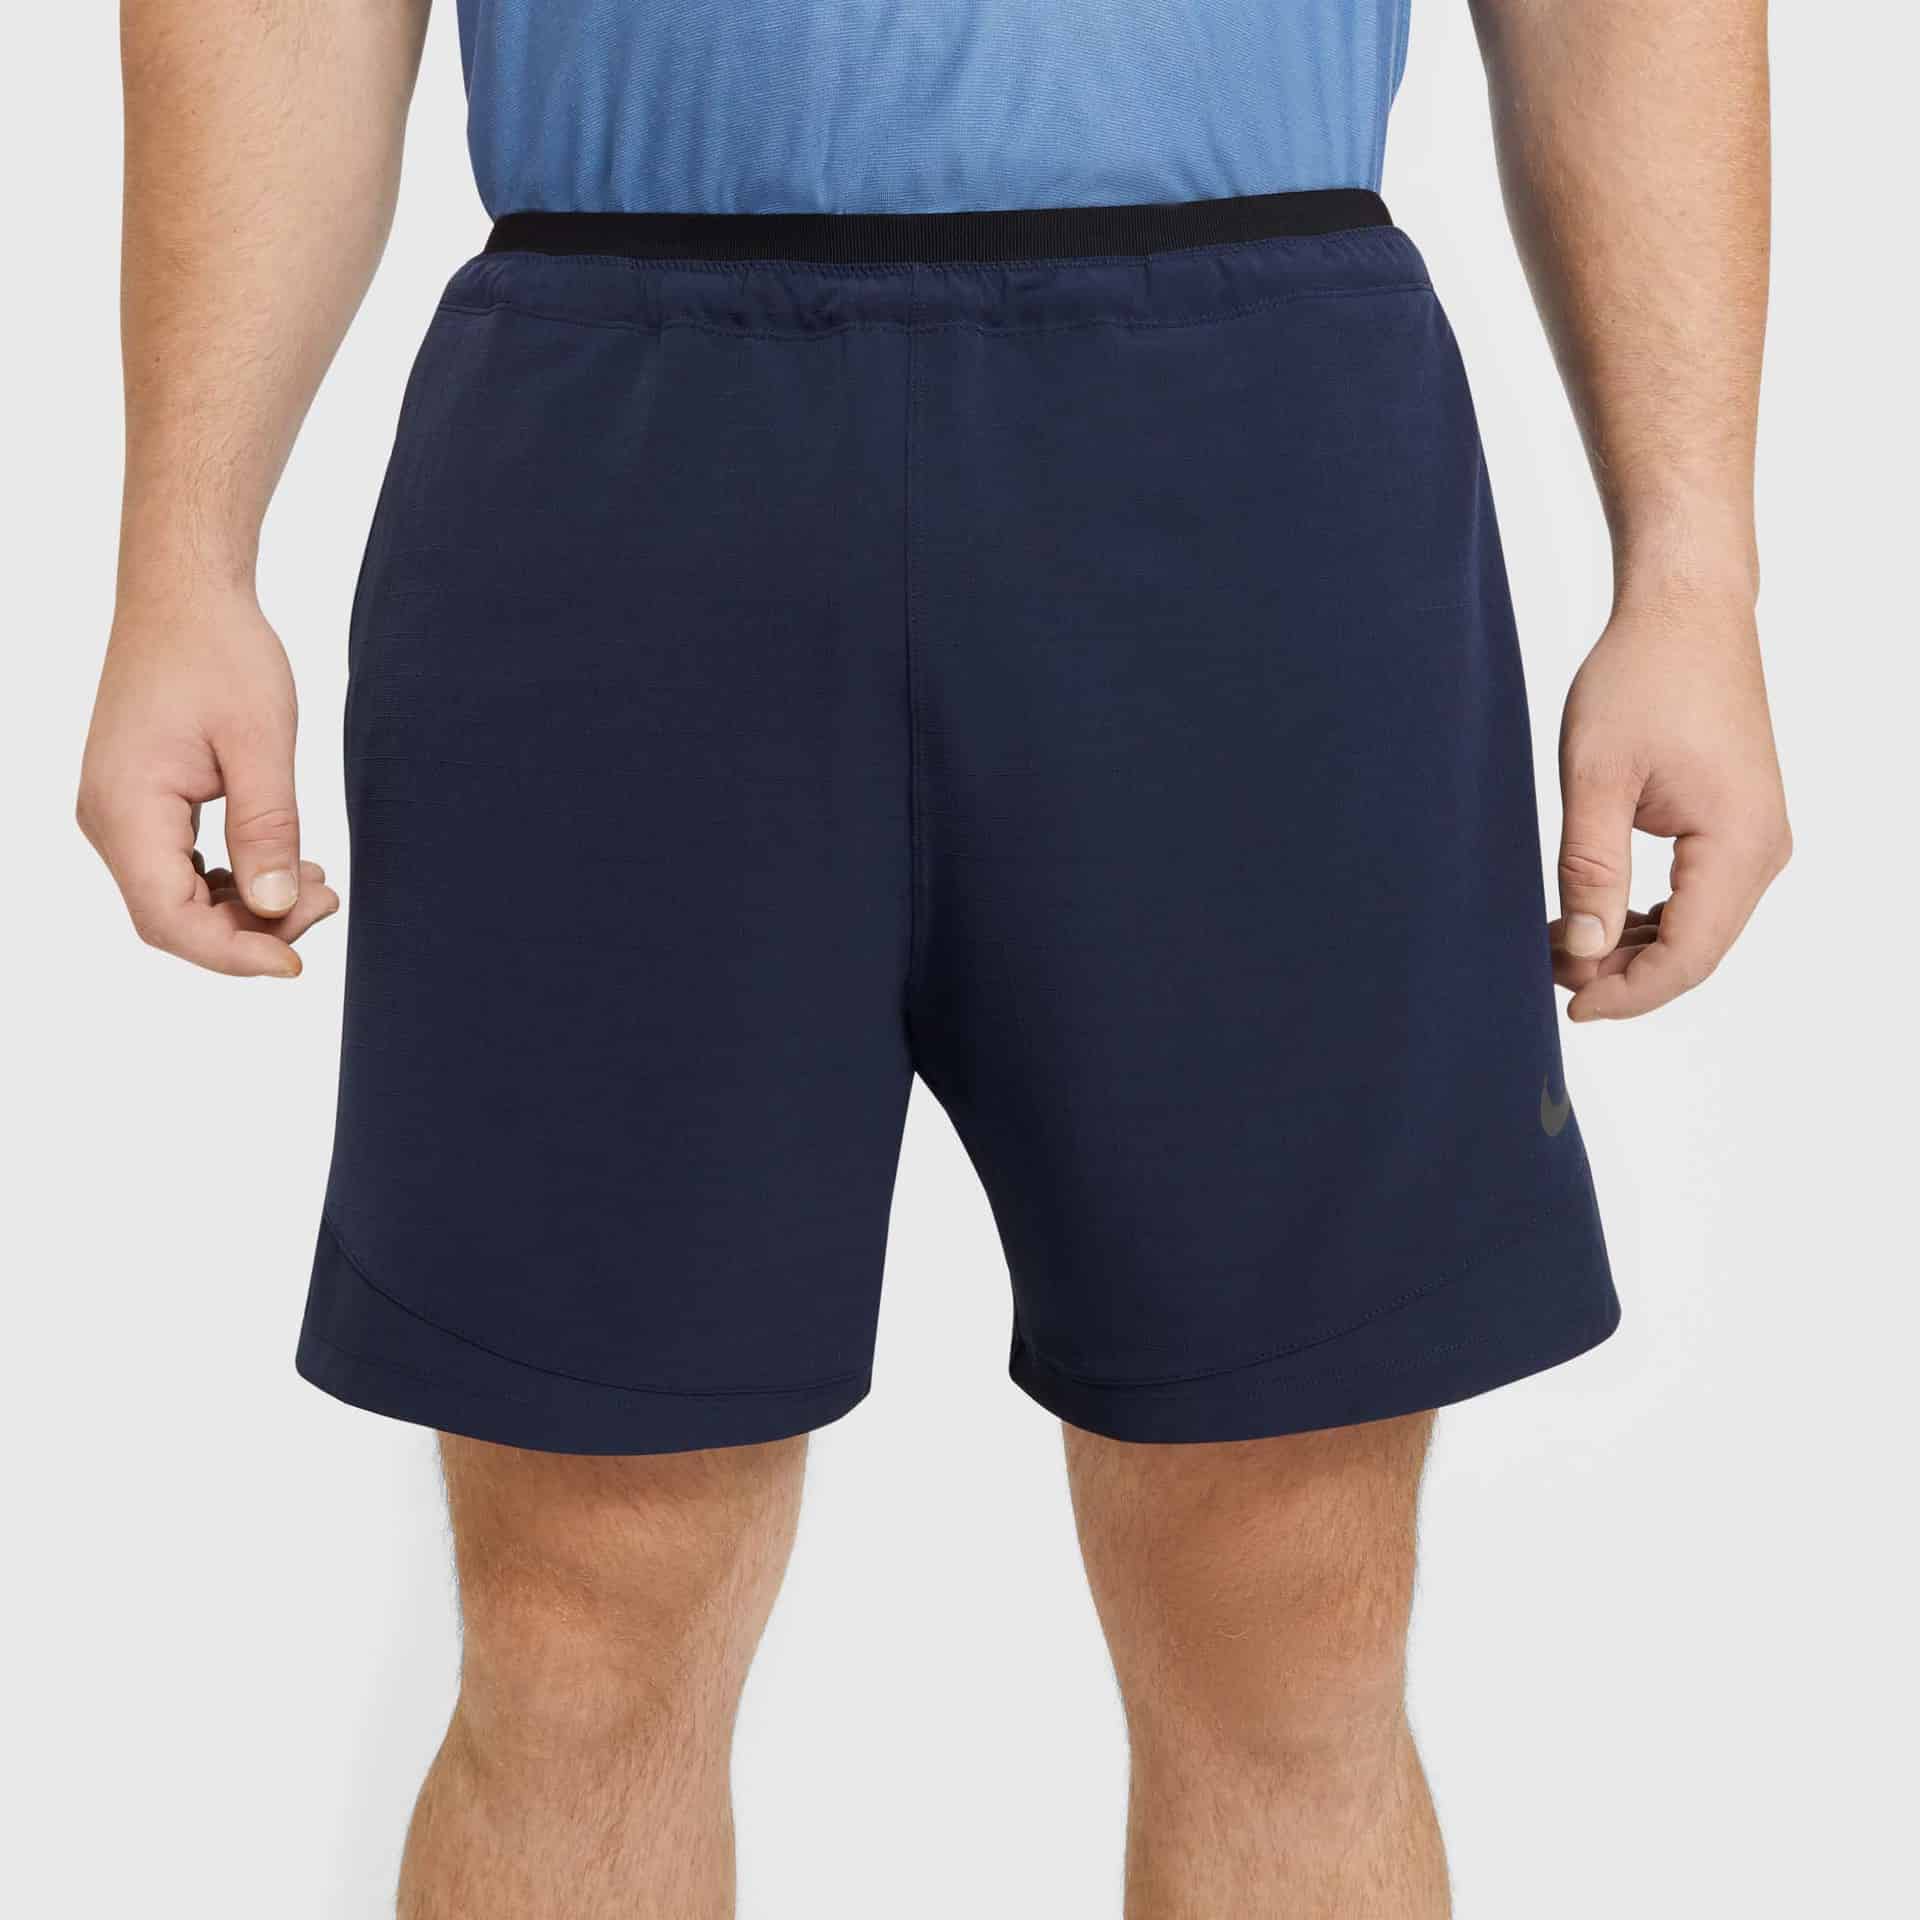 Nike Pro Rep Men's Shorts - Asport